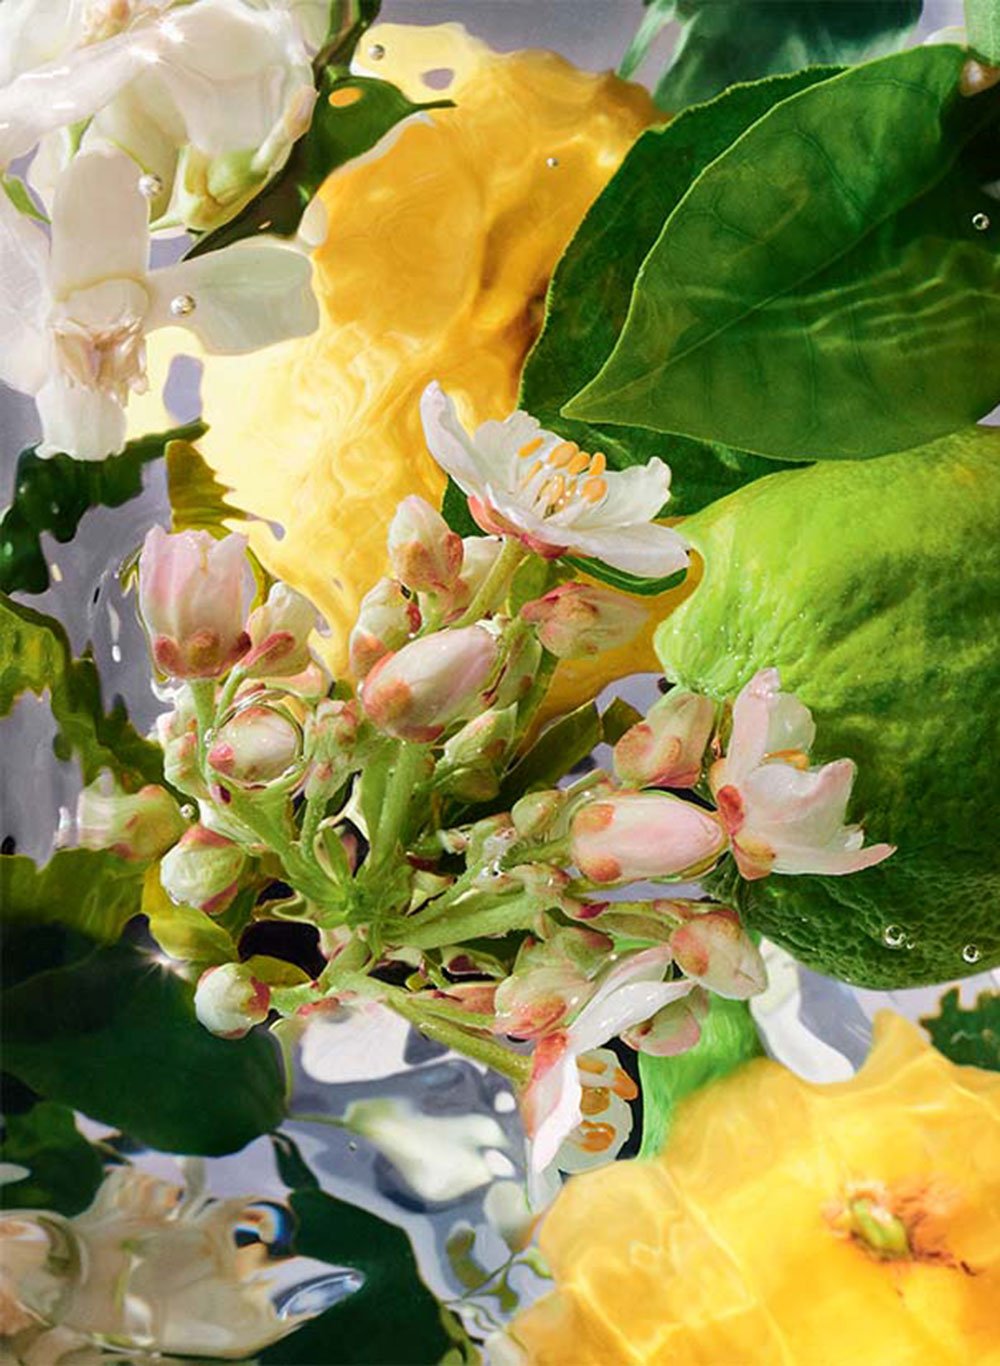 BERGAMOTTE-ESSENZ Diese kostbare, auch »grünes Gold von Kalabrien« genannte Frucht verleiht eine exquisite zitrursartige blumig-grüne Frische. guerlain.com